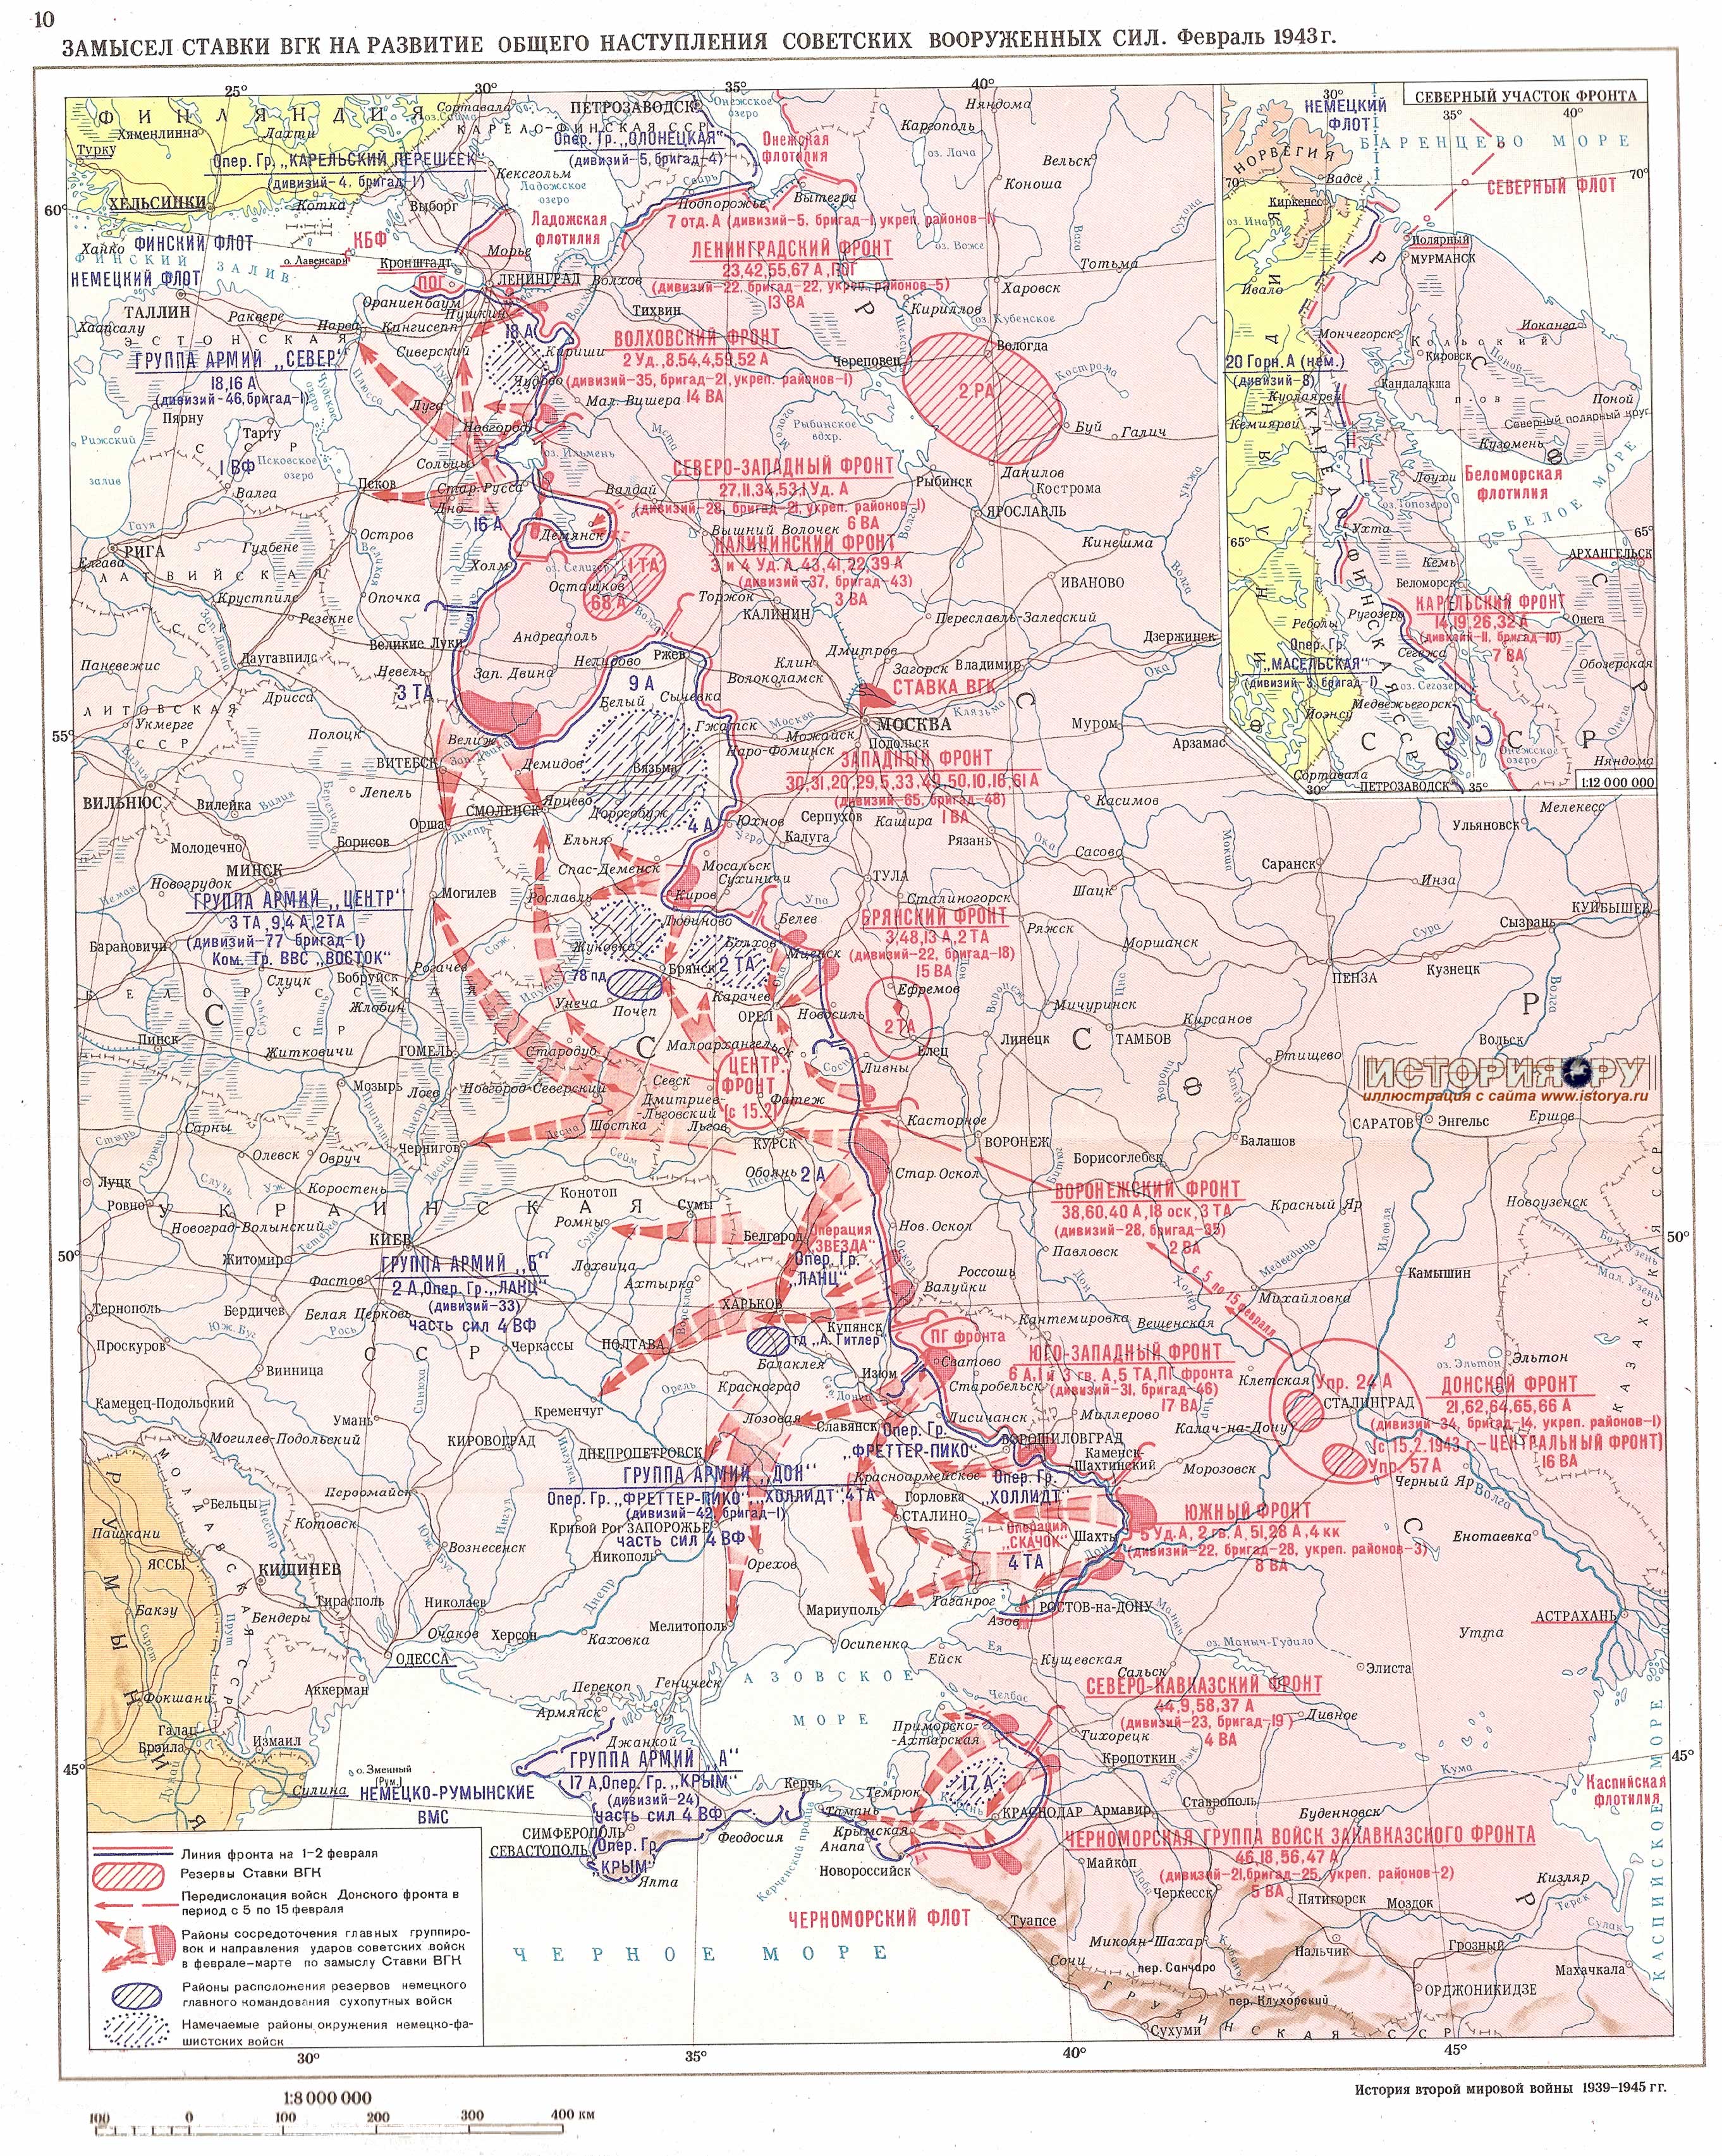 Замысел Ставки ВГК на развитие общего наступления Советских Вооруженных Сил. Февраль 1943 г.